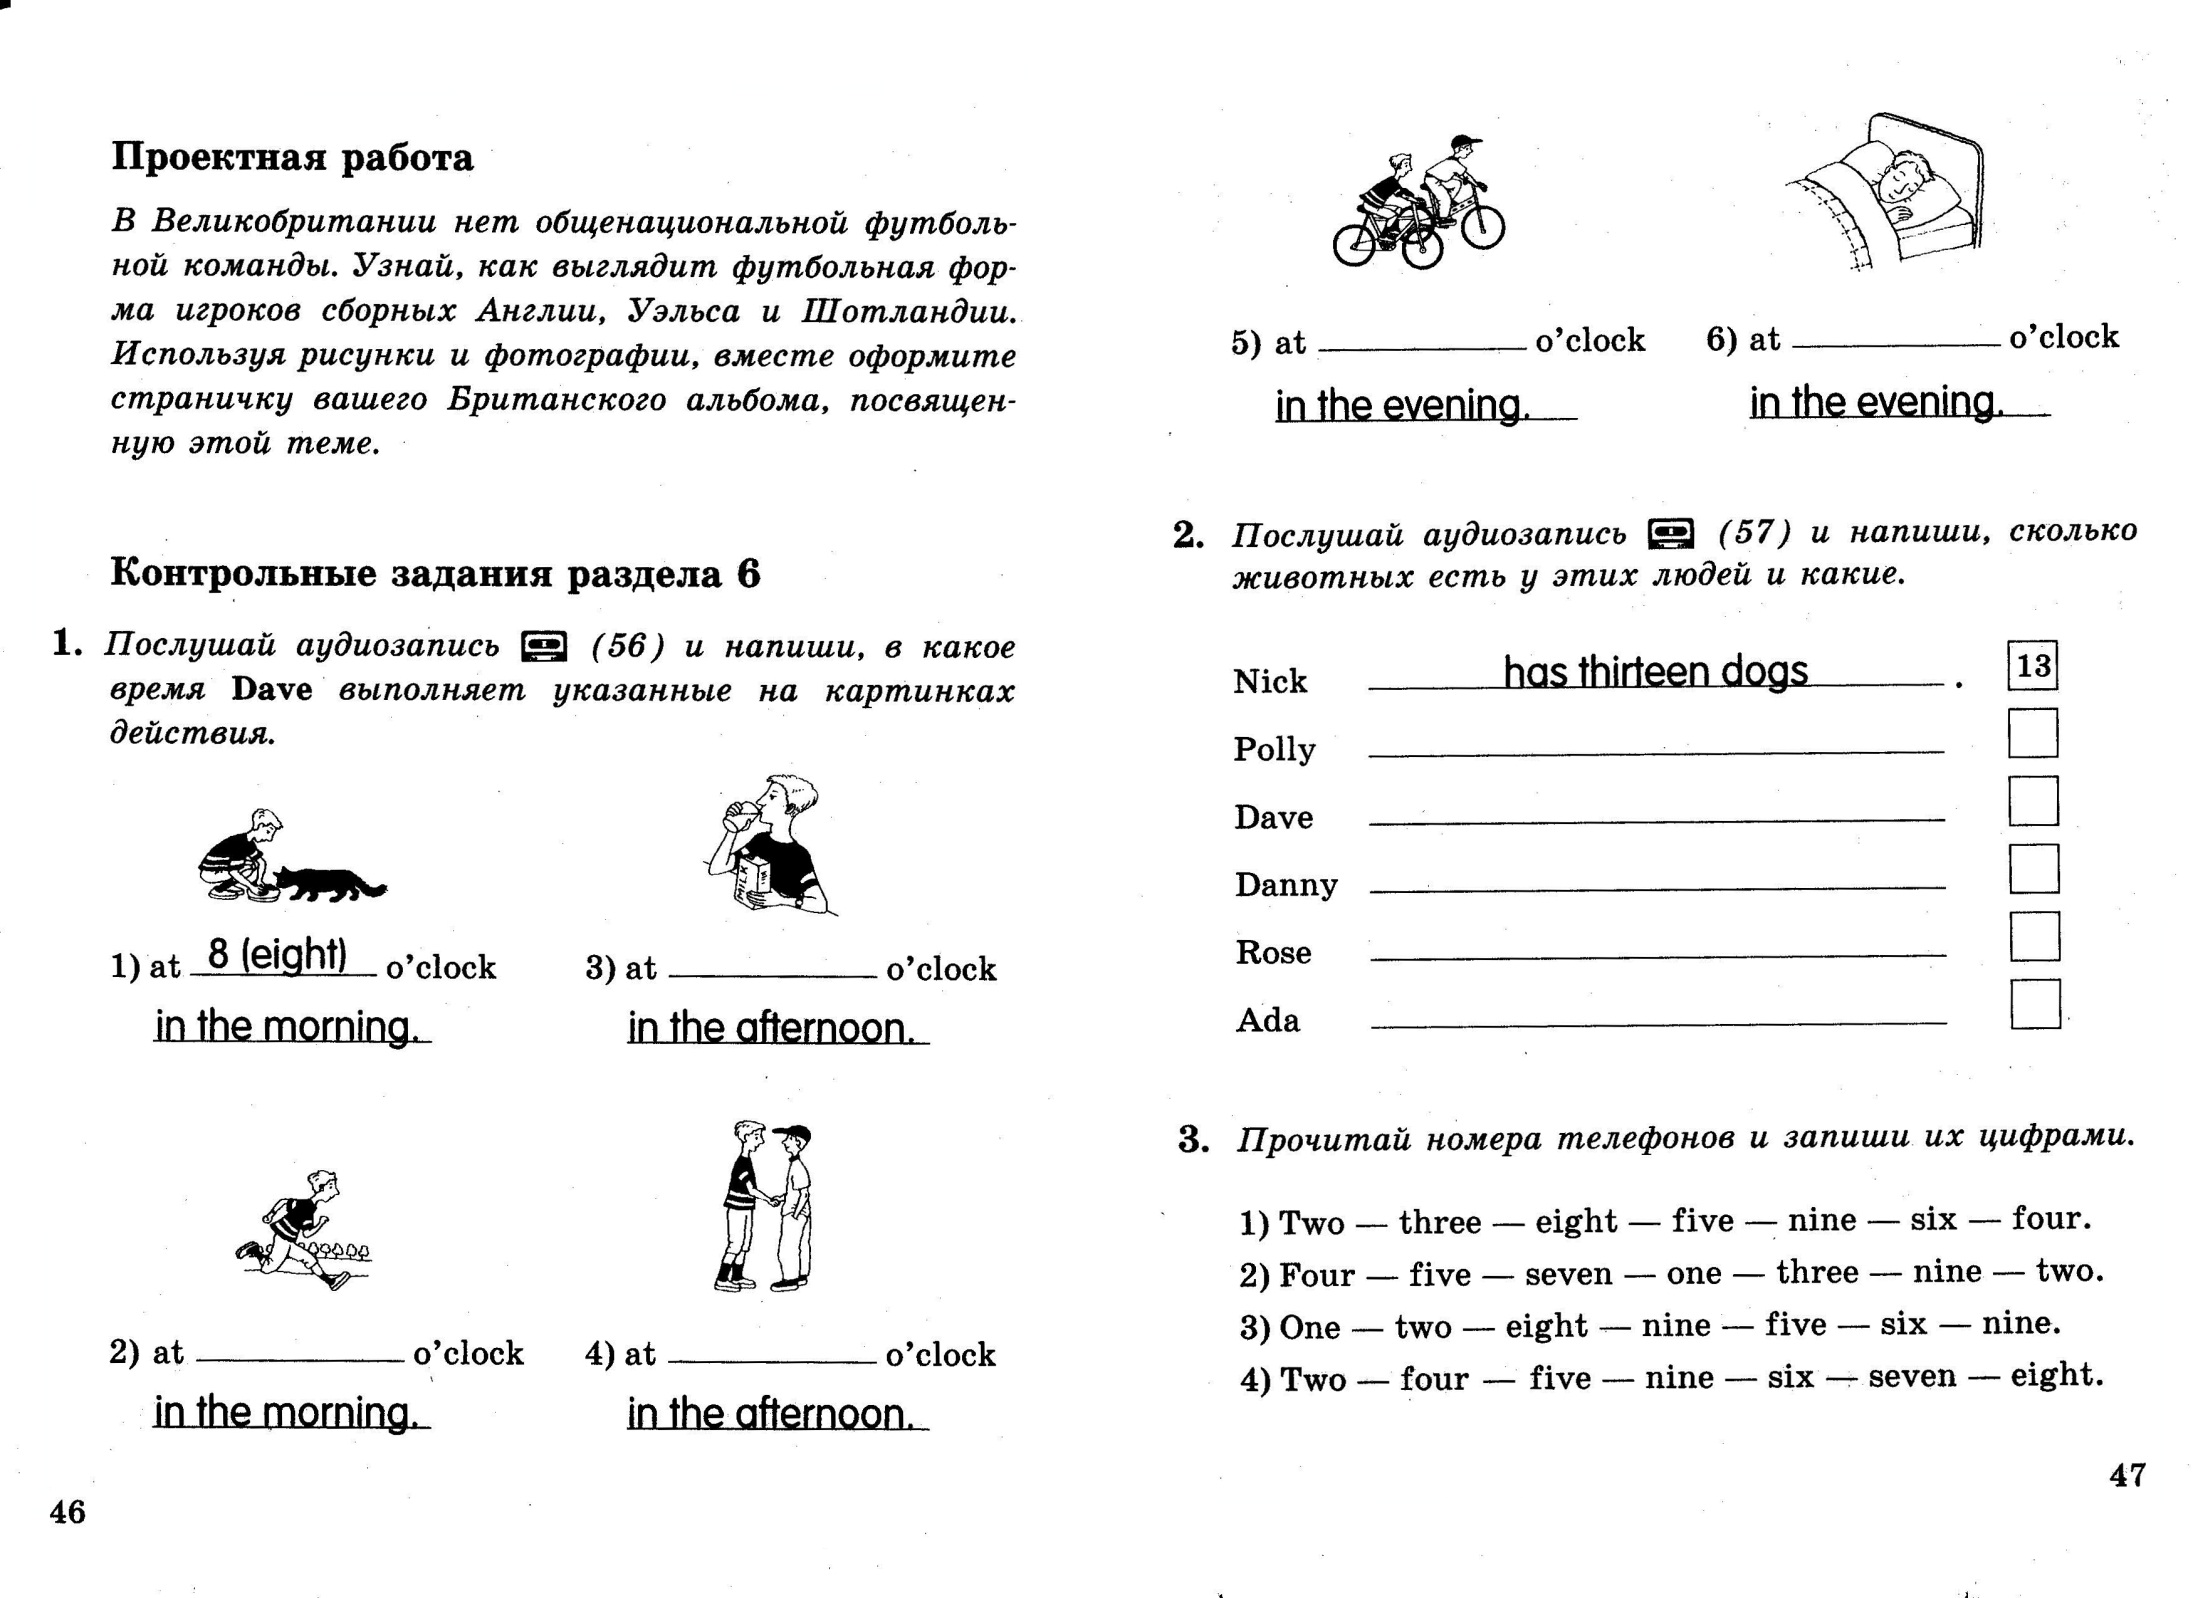 Рабочая программа по английскому языку для Российских школ, 5 класс, 1-й год обучения